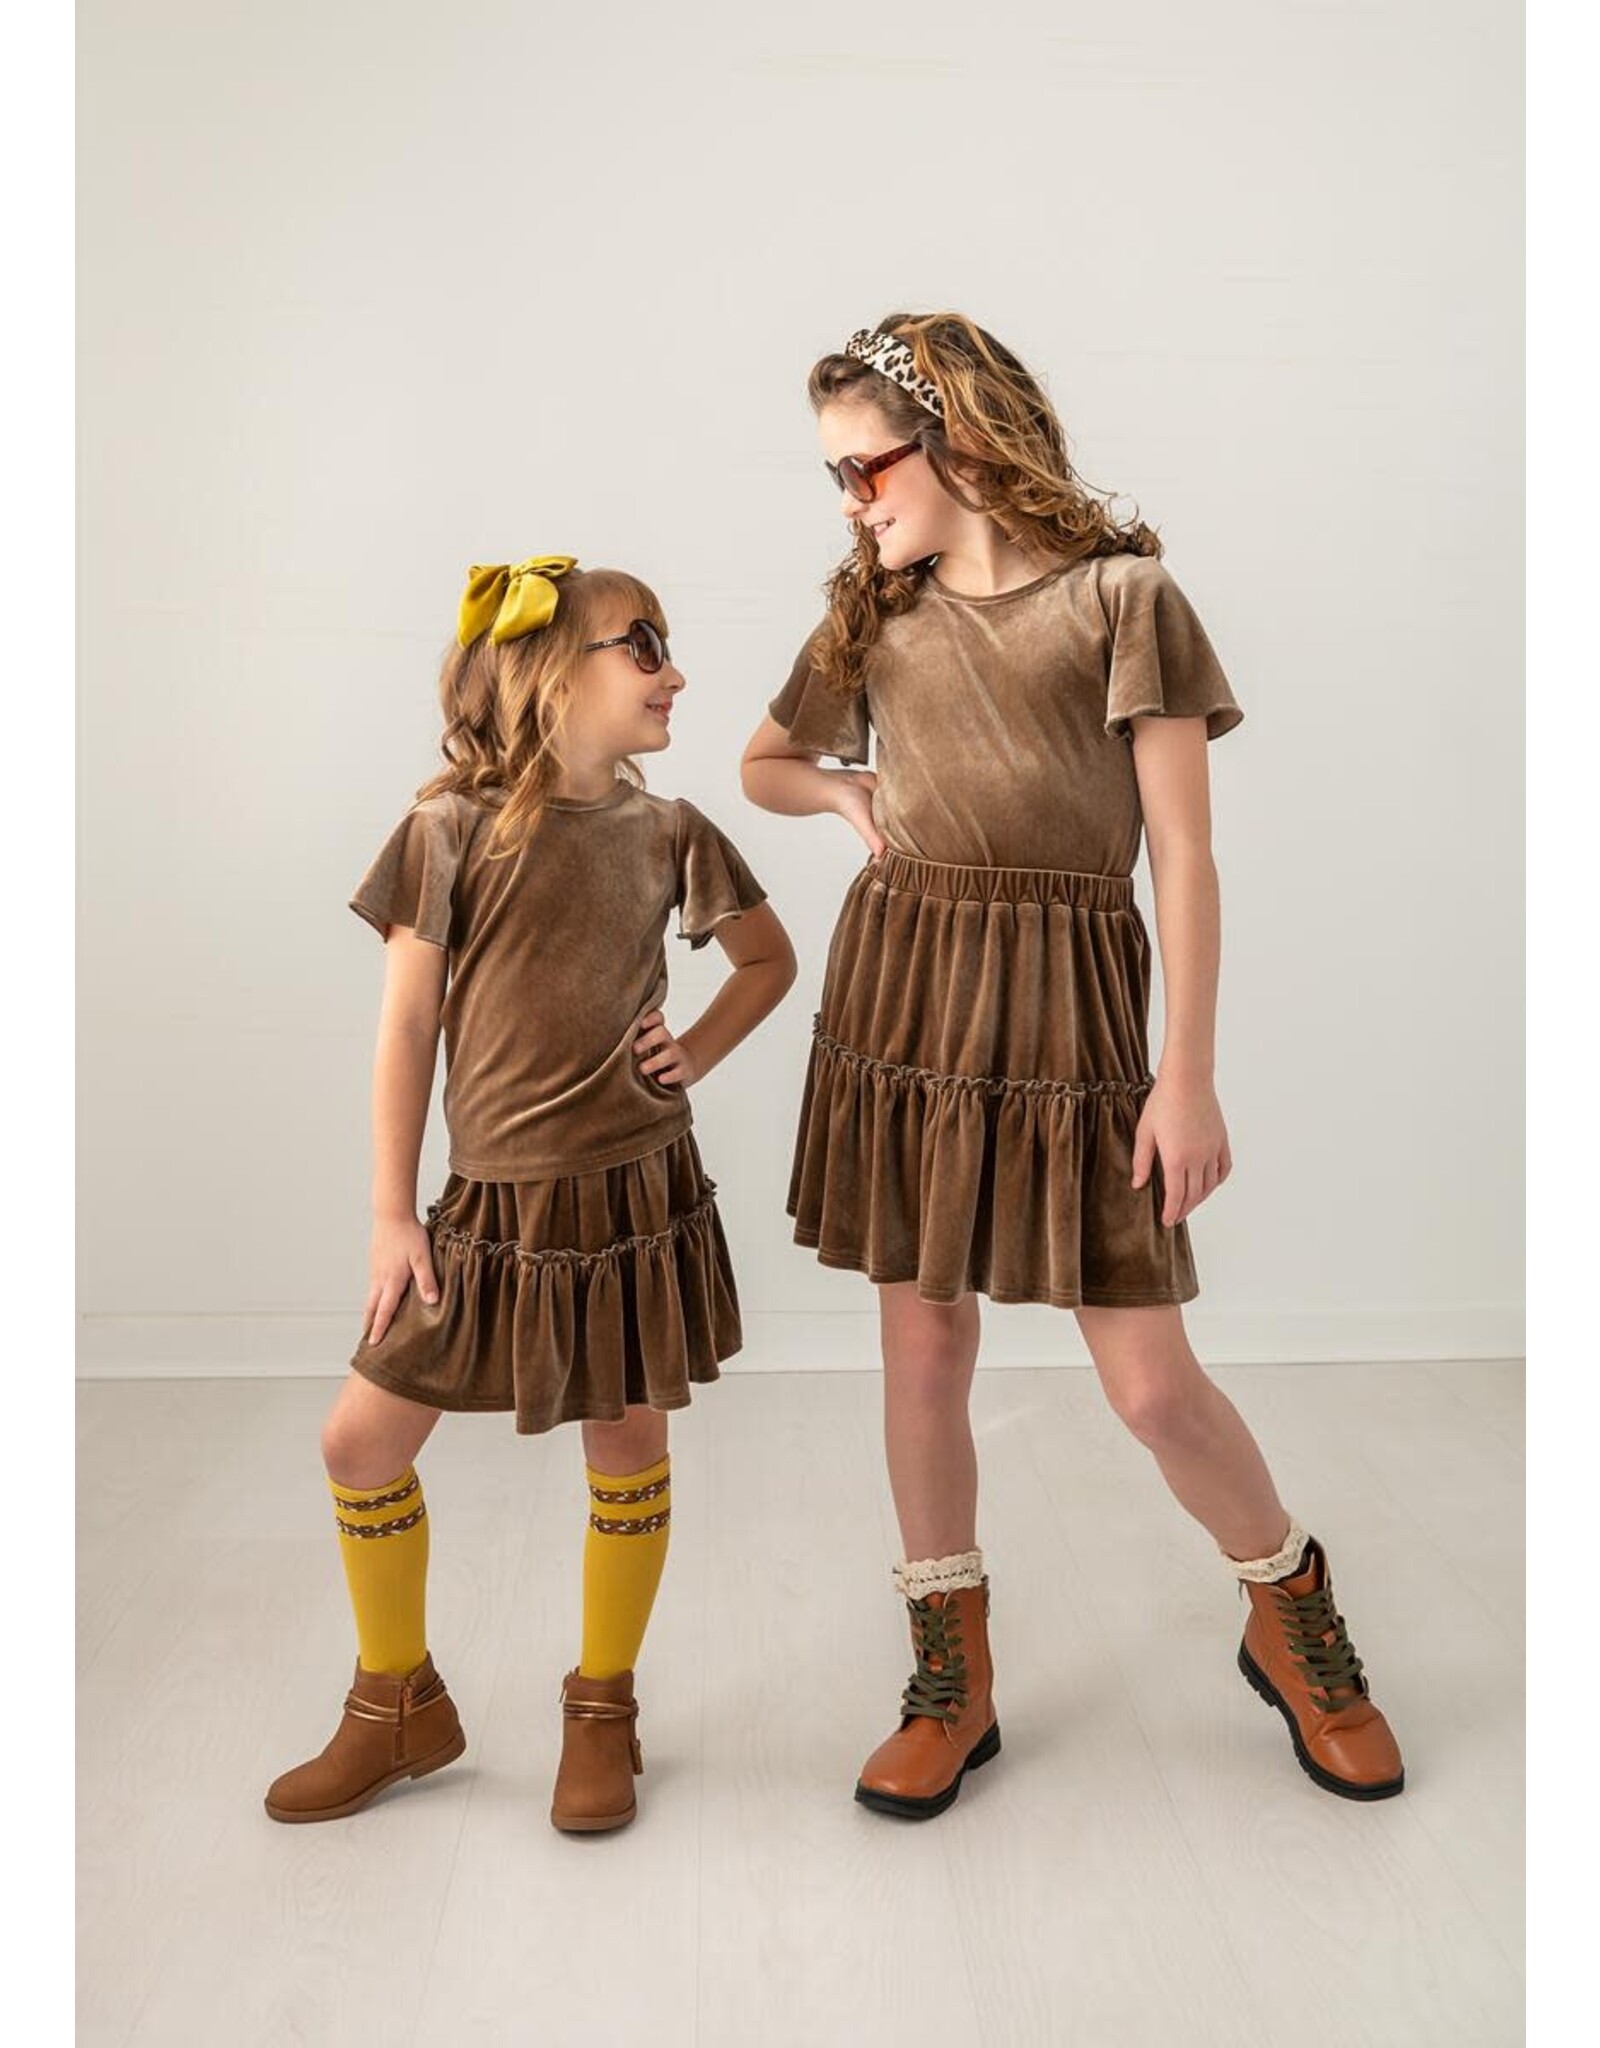 Evie's Closet Evie's Closet- Hazel Blossom Simplicity Skirt Set